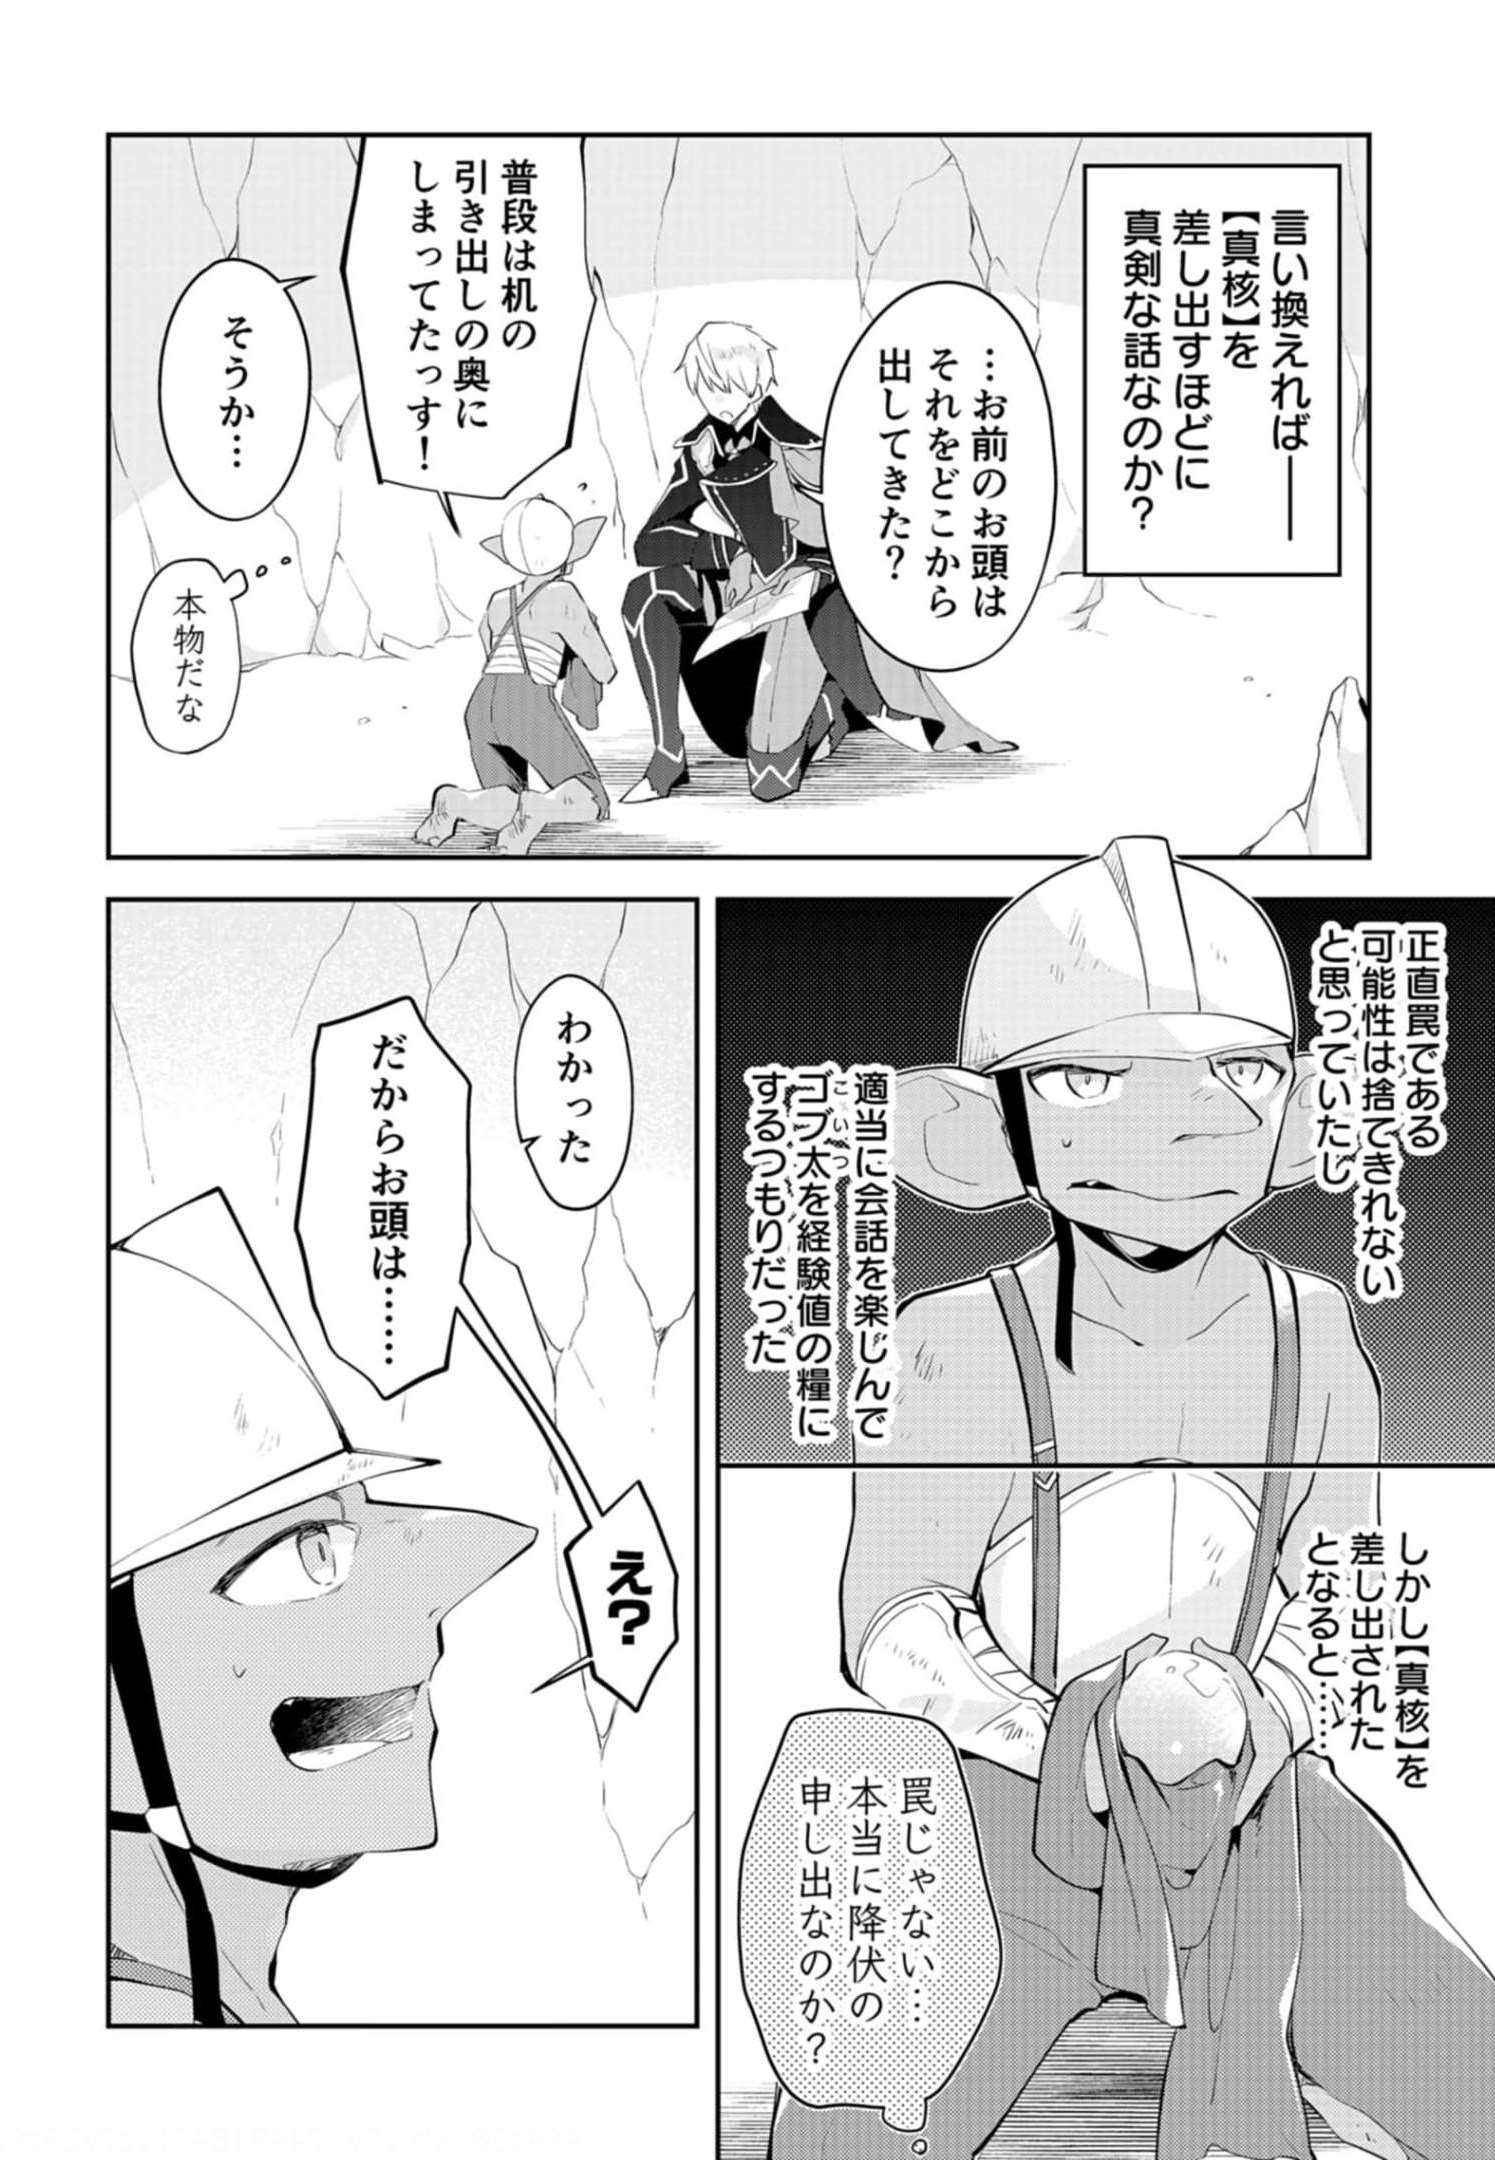 Dungeon Battle Royale ~Maou ni Nattanode Sekai Touitsu wo Mezashimasu~ - Chapter 12 - Page 2